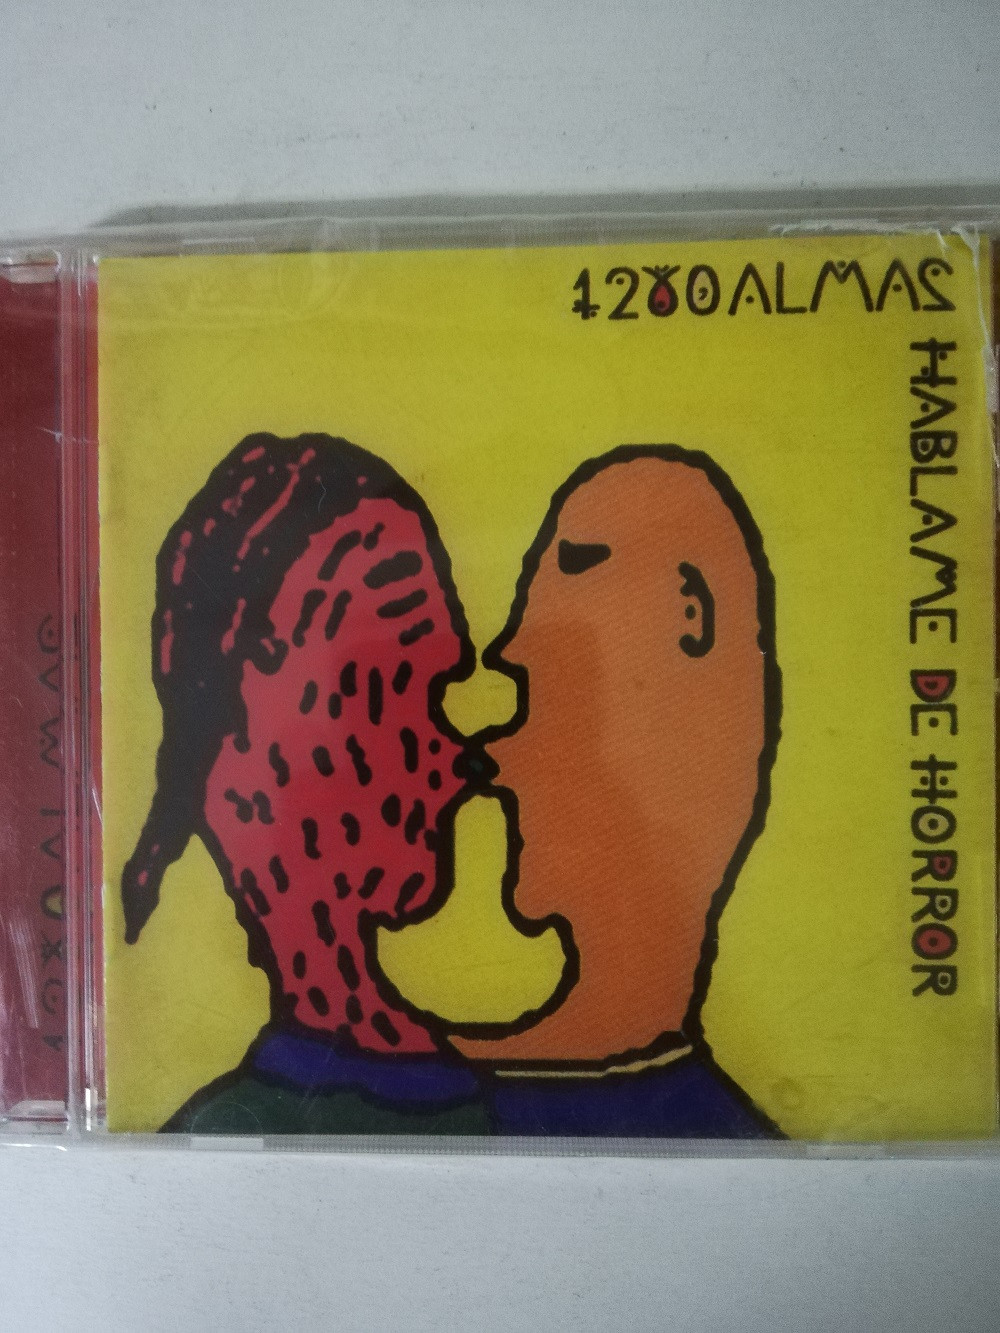 Imagen CD 1280 ALMAS - HABLAME DE HORROR